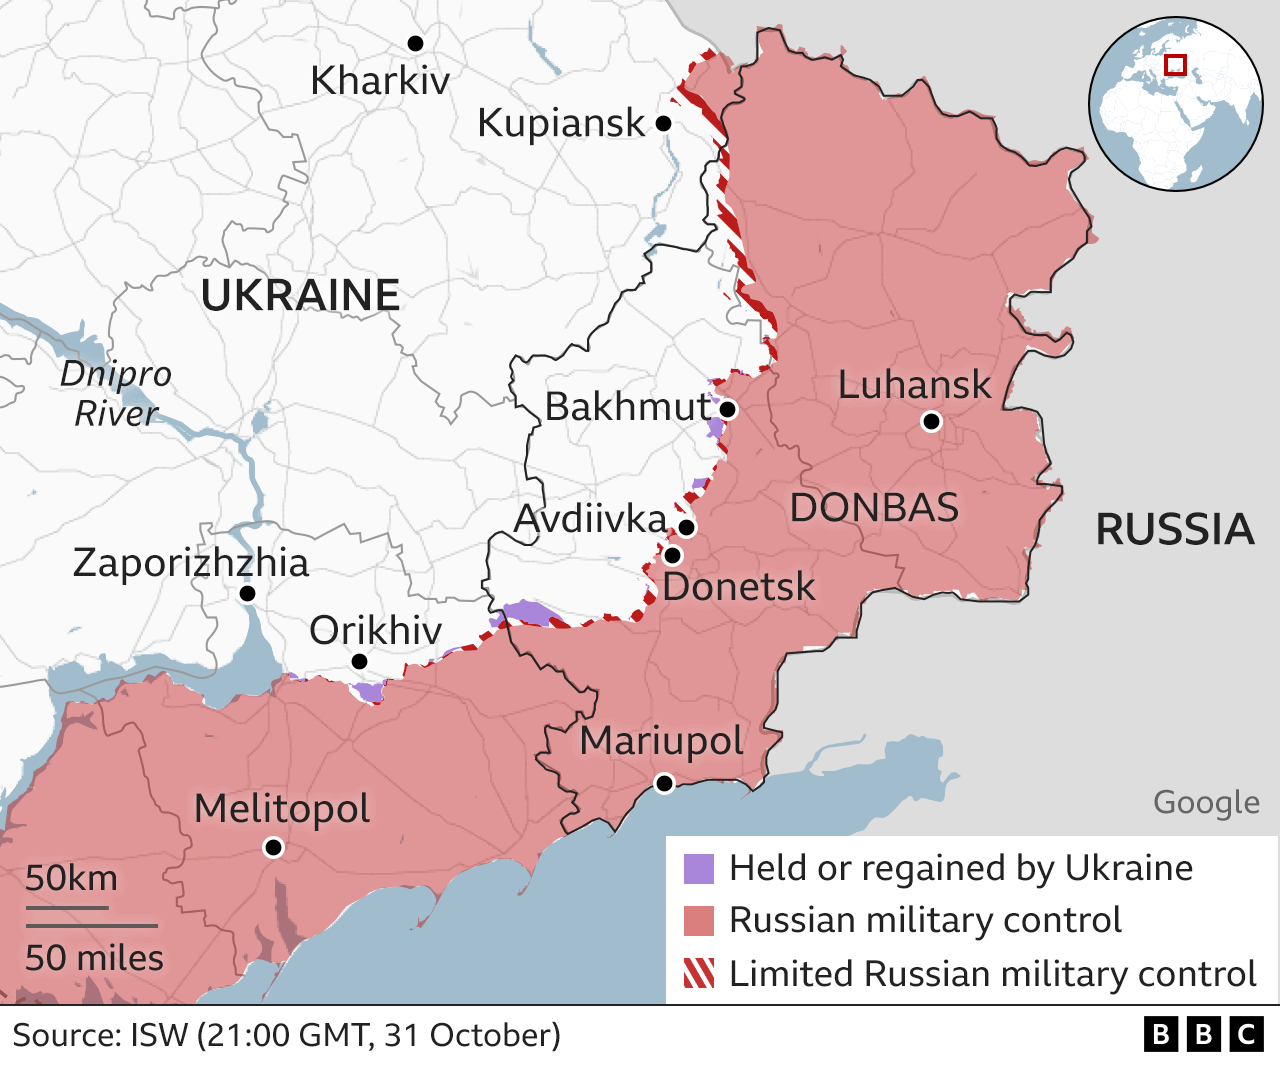 Карта восточной и южной Украины с указанием зон контроля России и Украины. Запорожье находится на юге, на территории, контролируемой Украиной, хотя и недалеко от линии фронта